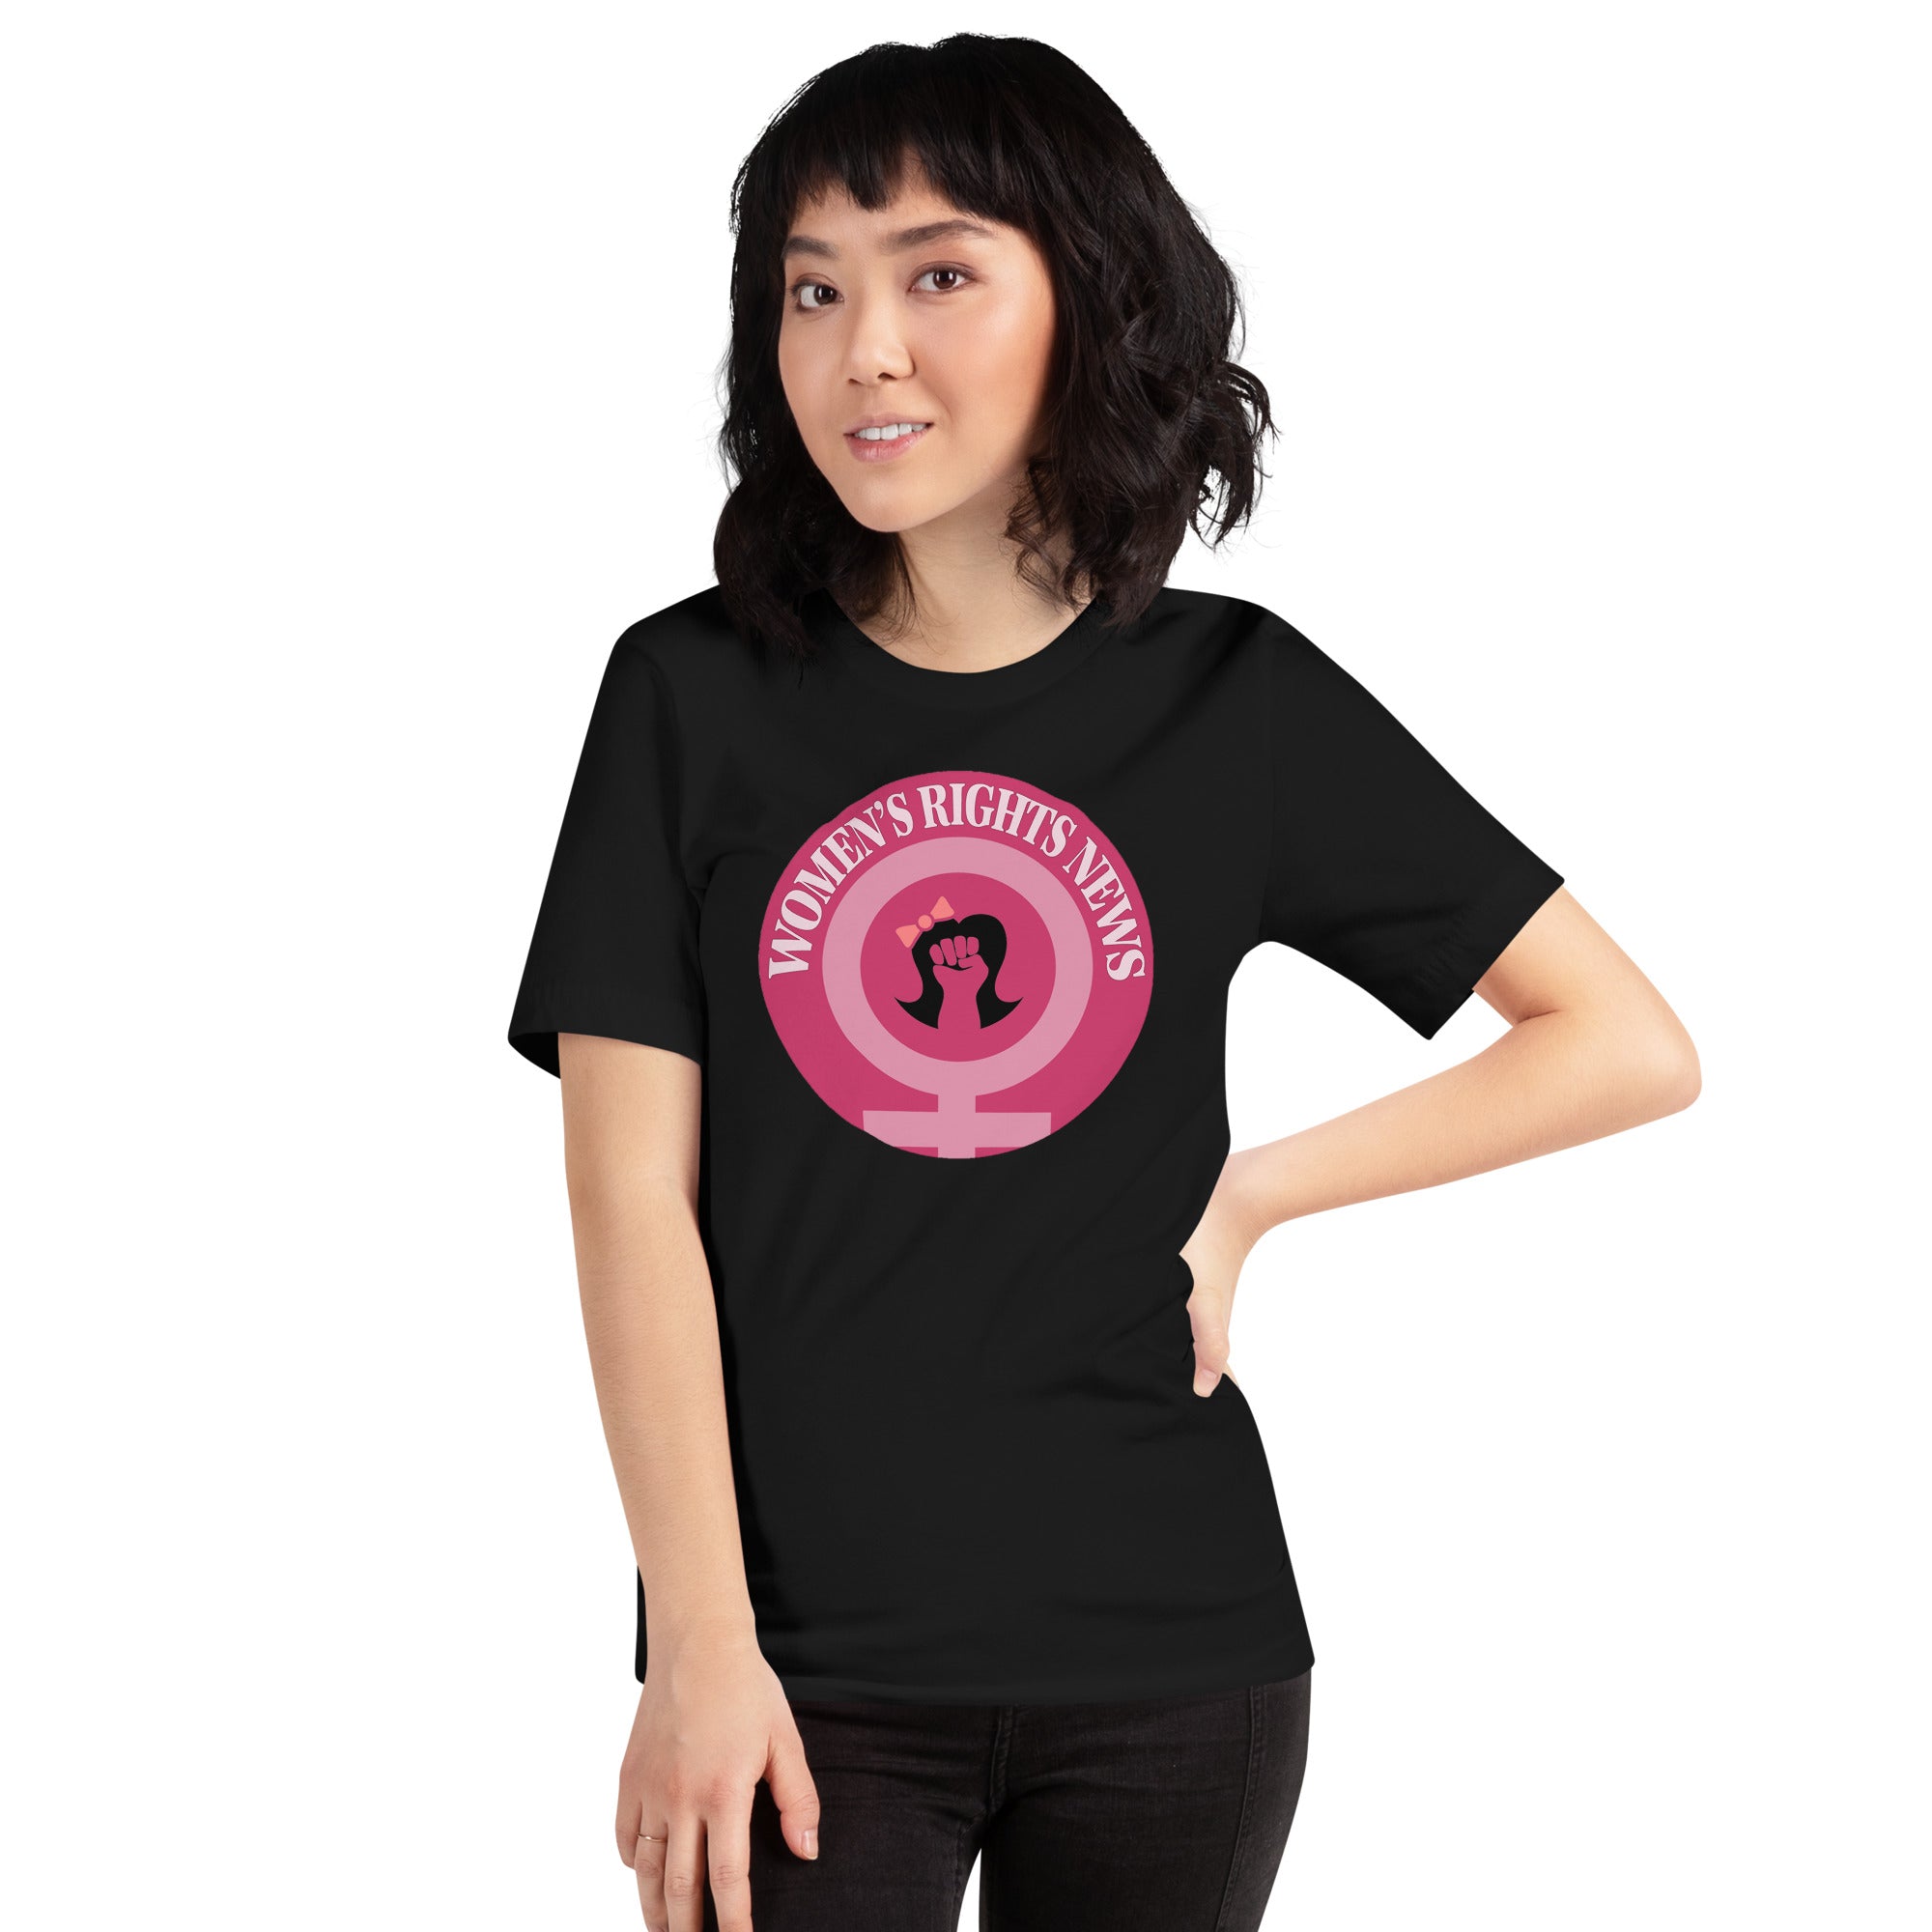 Women’s Rights News Unisex t-shirt